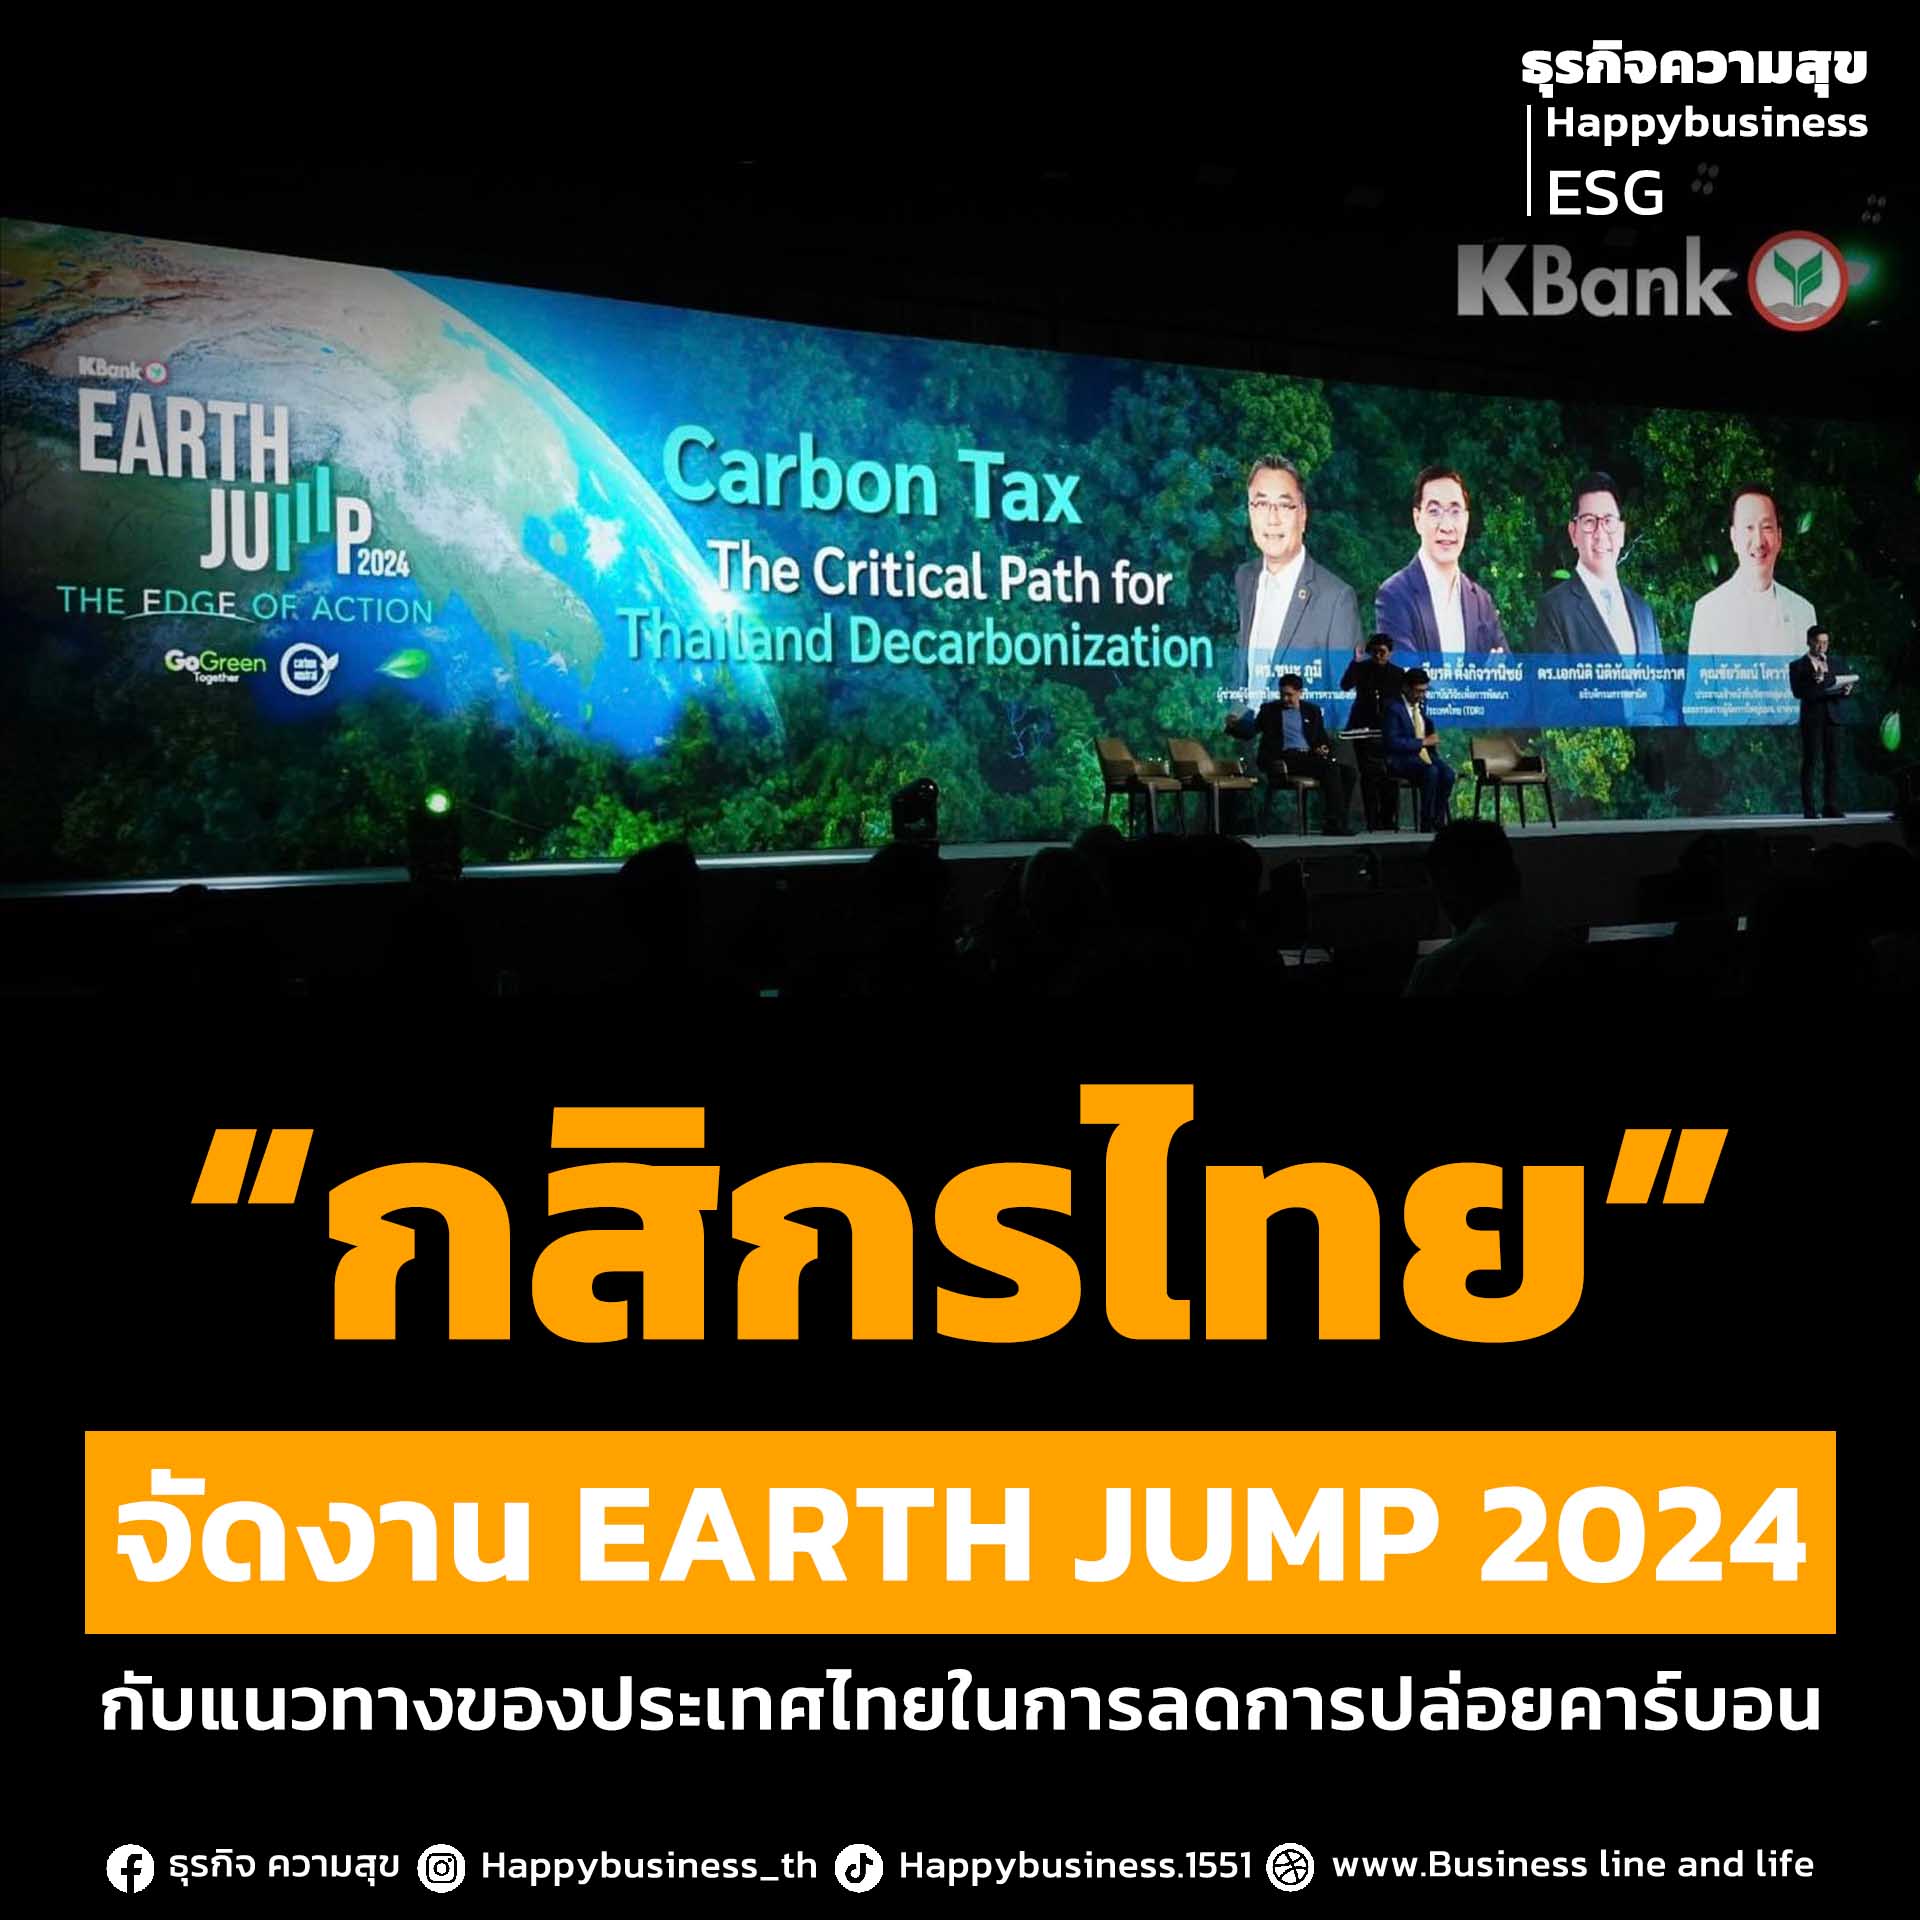 “กสิกรไทย” จัดงาน EARTH JUMP 2024 กับแนวทางของประเทศไทยในการลดการปล่อยคาร์บอน